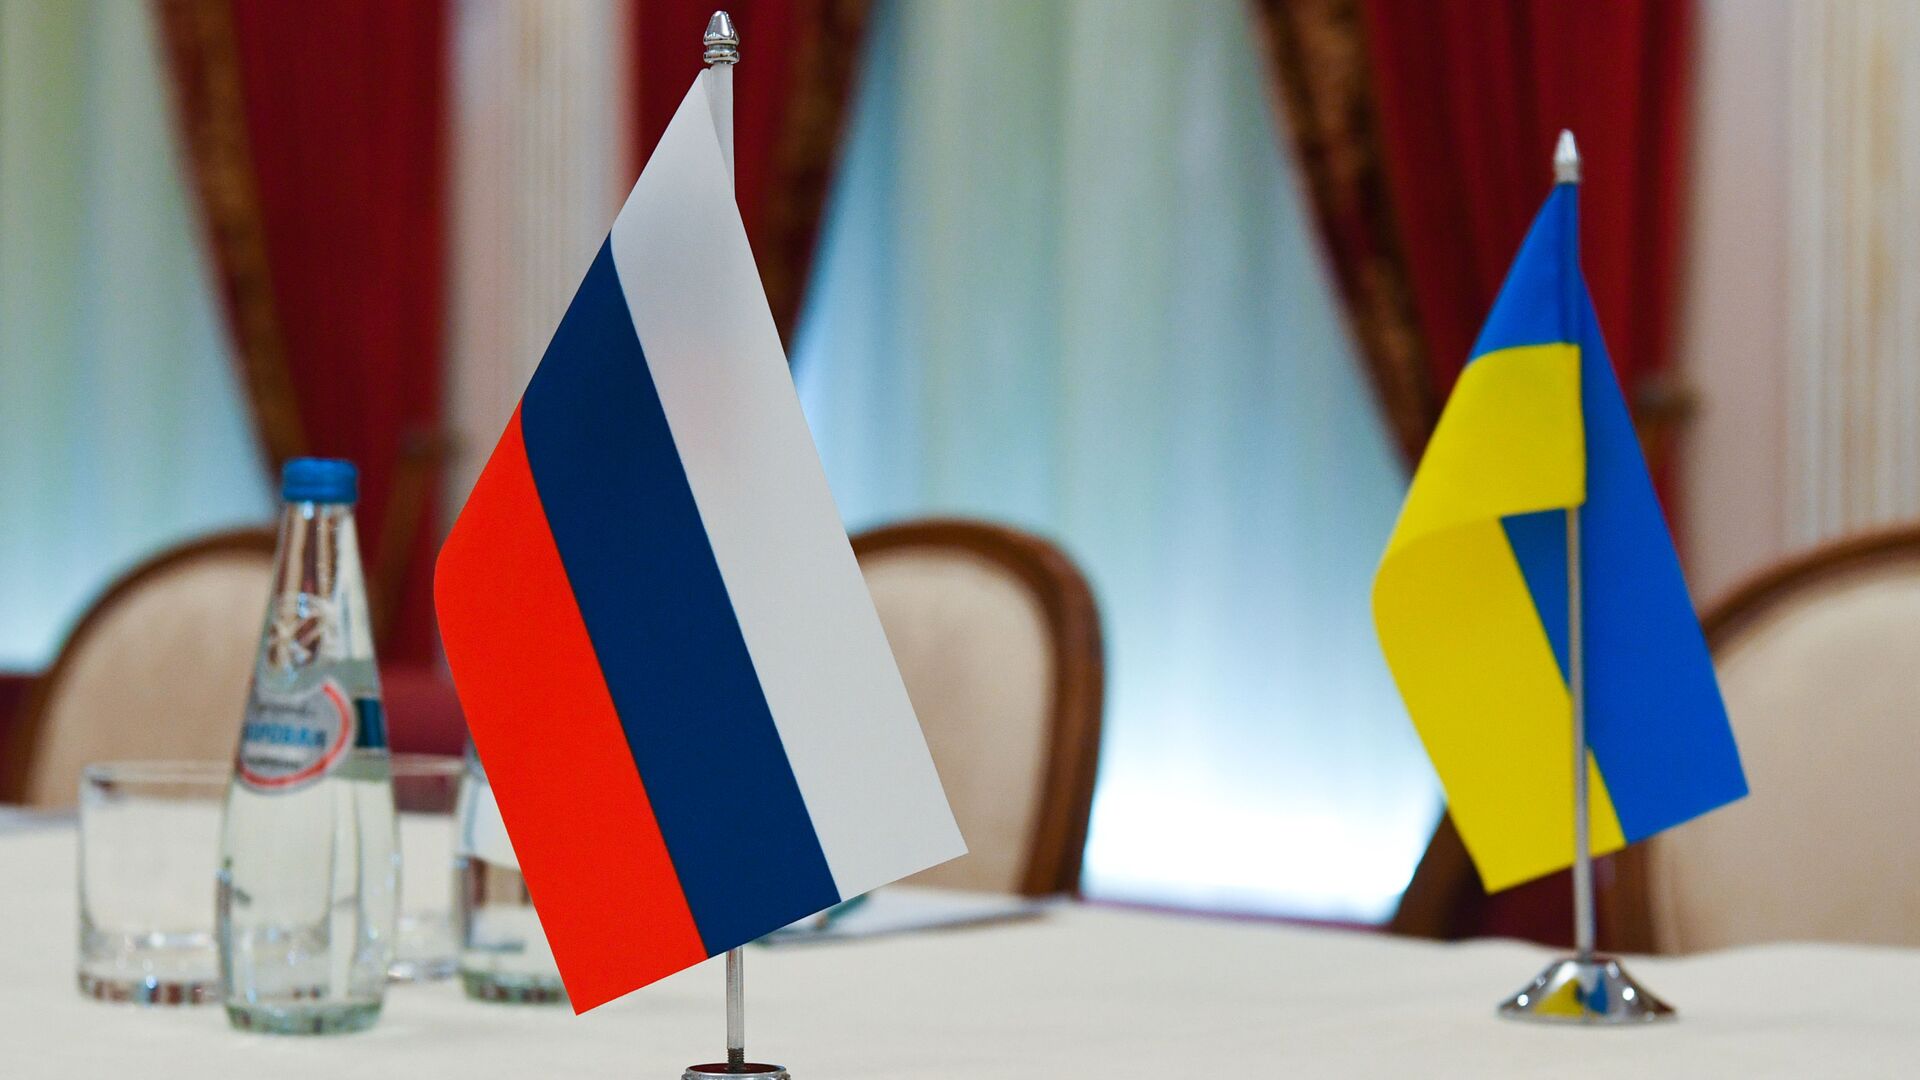 Флаги России и Украины в зале, где пройдут переговоры - Sputnik Таджикистан, 1920, 18.06.2022